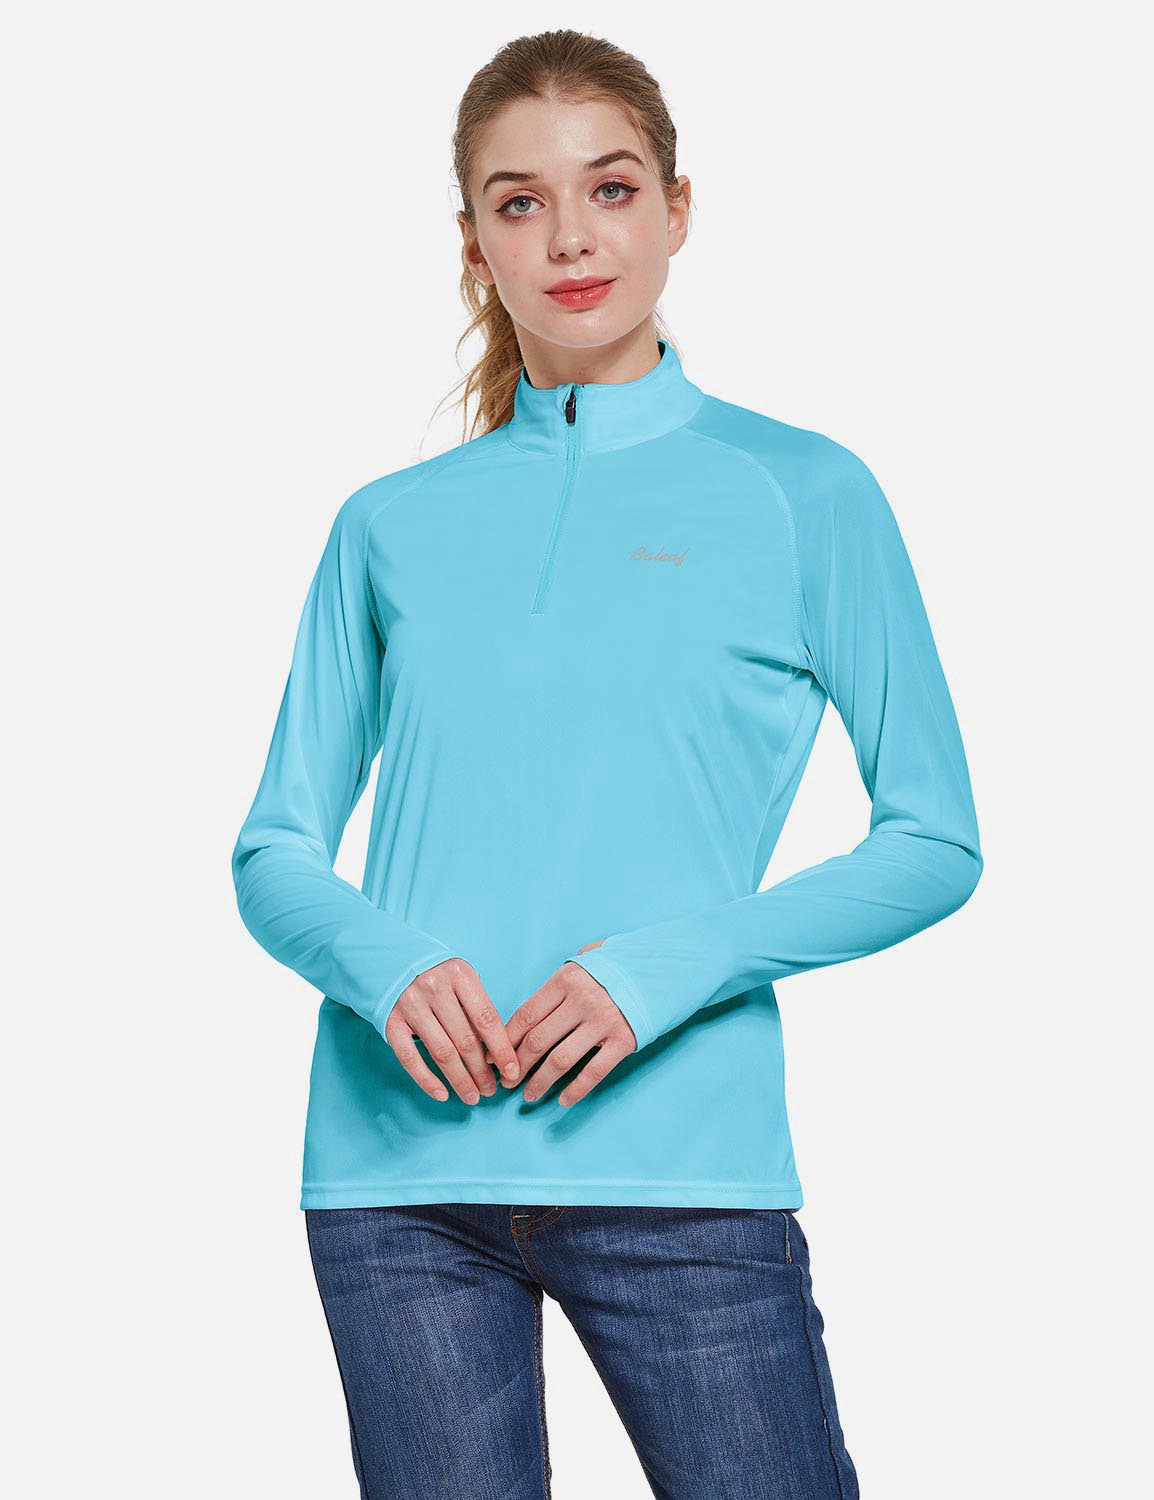  BALEAF Women's Long Sleeve Tennis Shirts UPF 50+ Golf